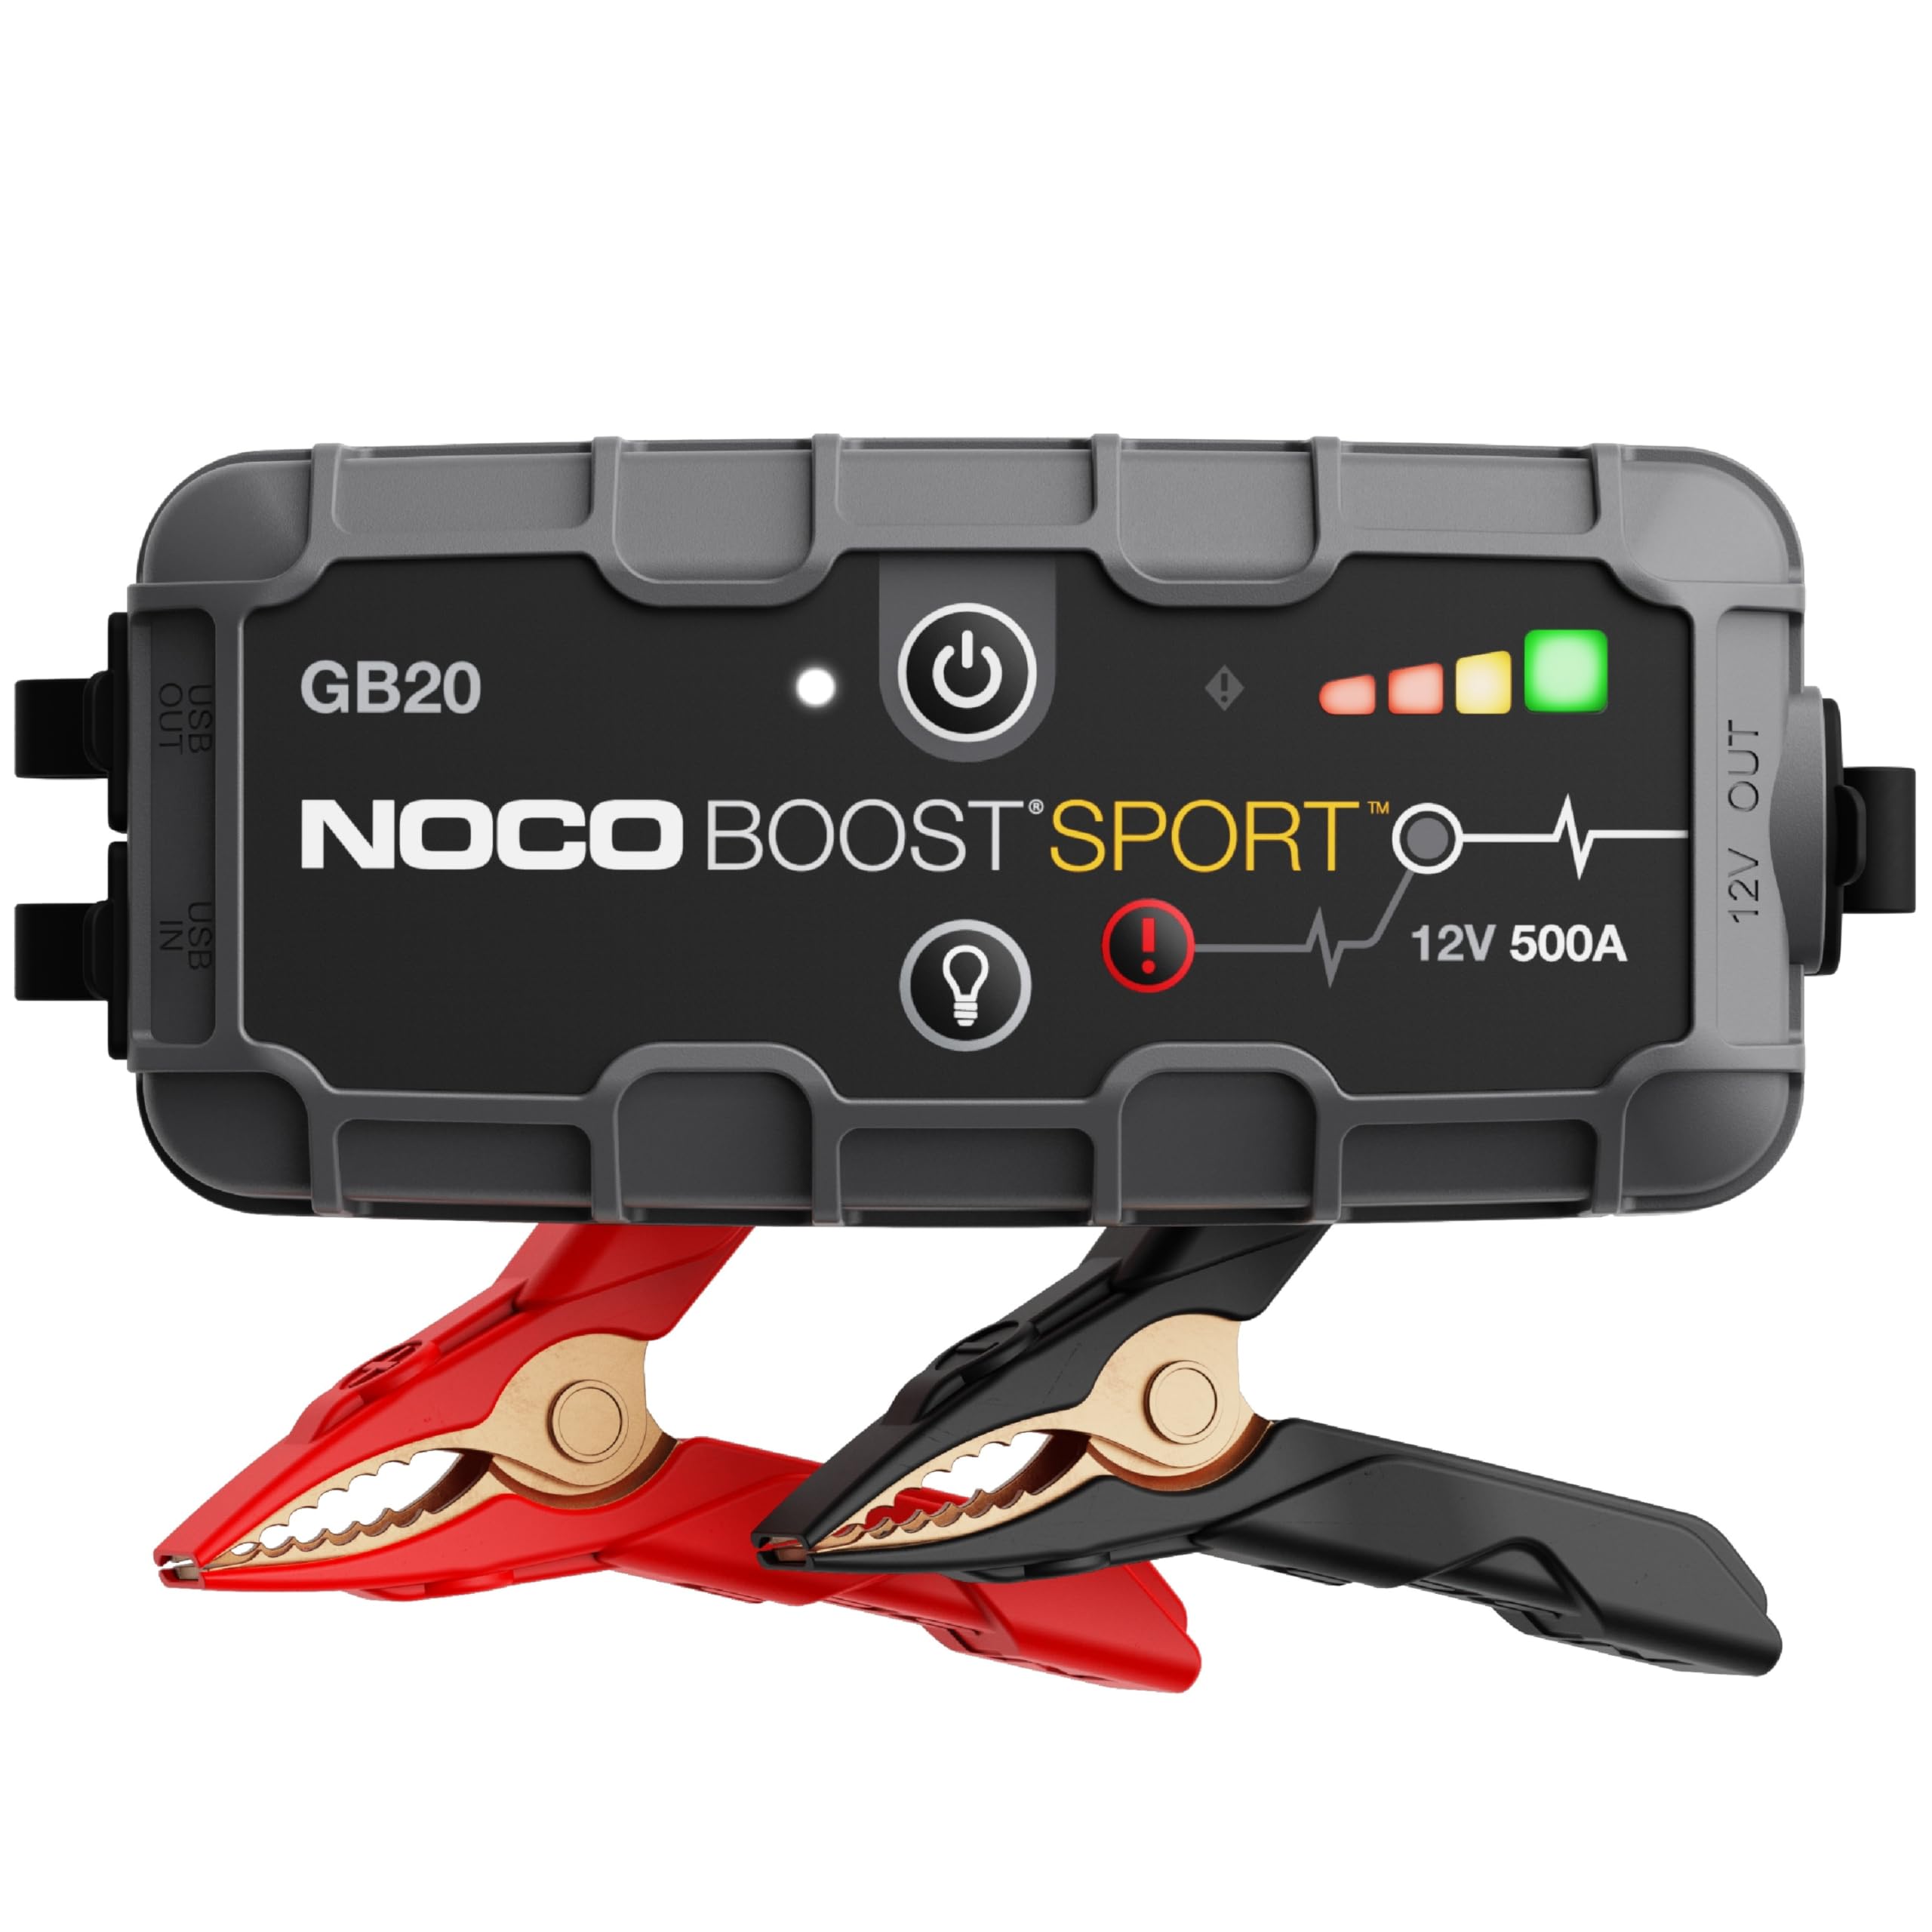 NOCO Boost Sport GB20 500 安培 12 伏超安全锂应急启动箱、汽车电池升压器包、便携式...